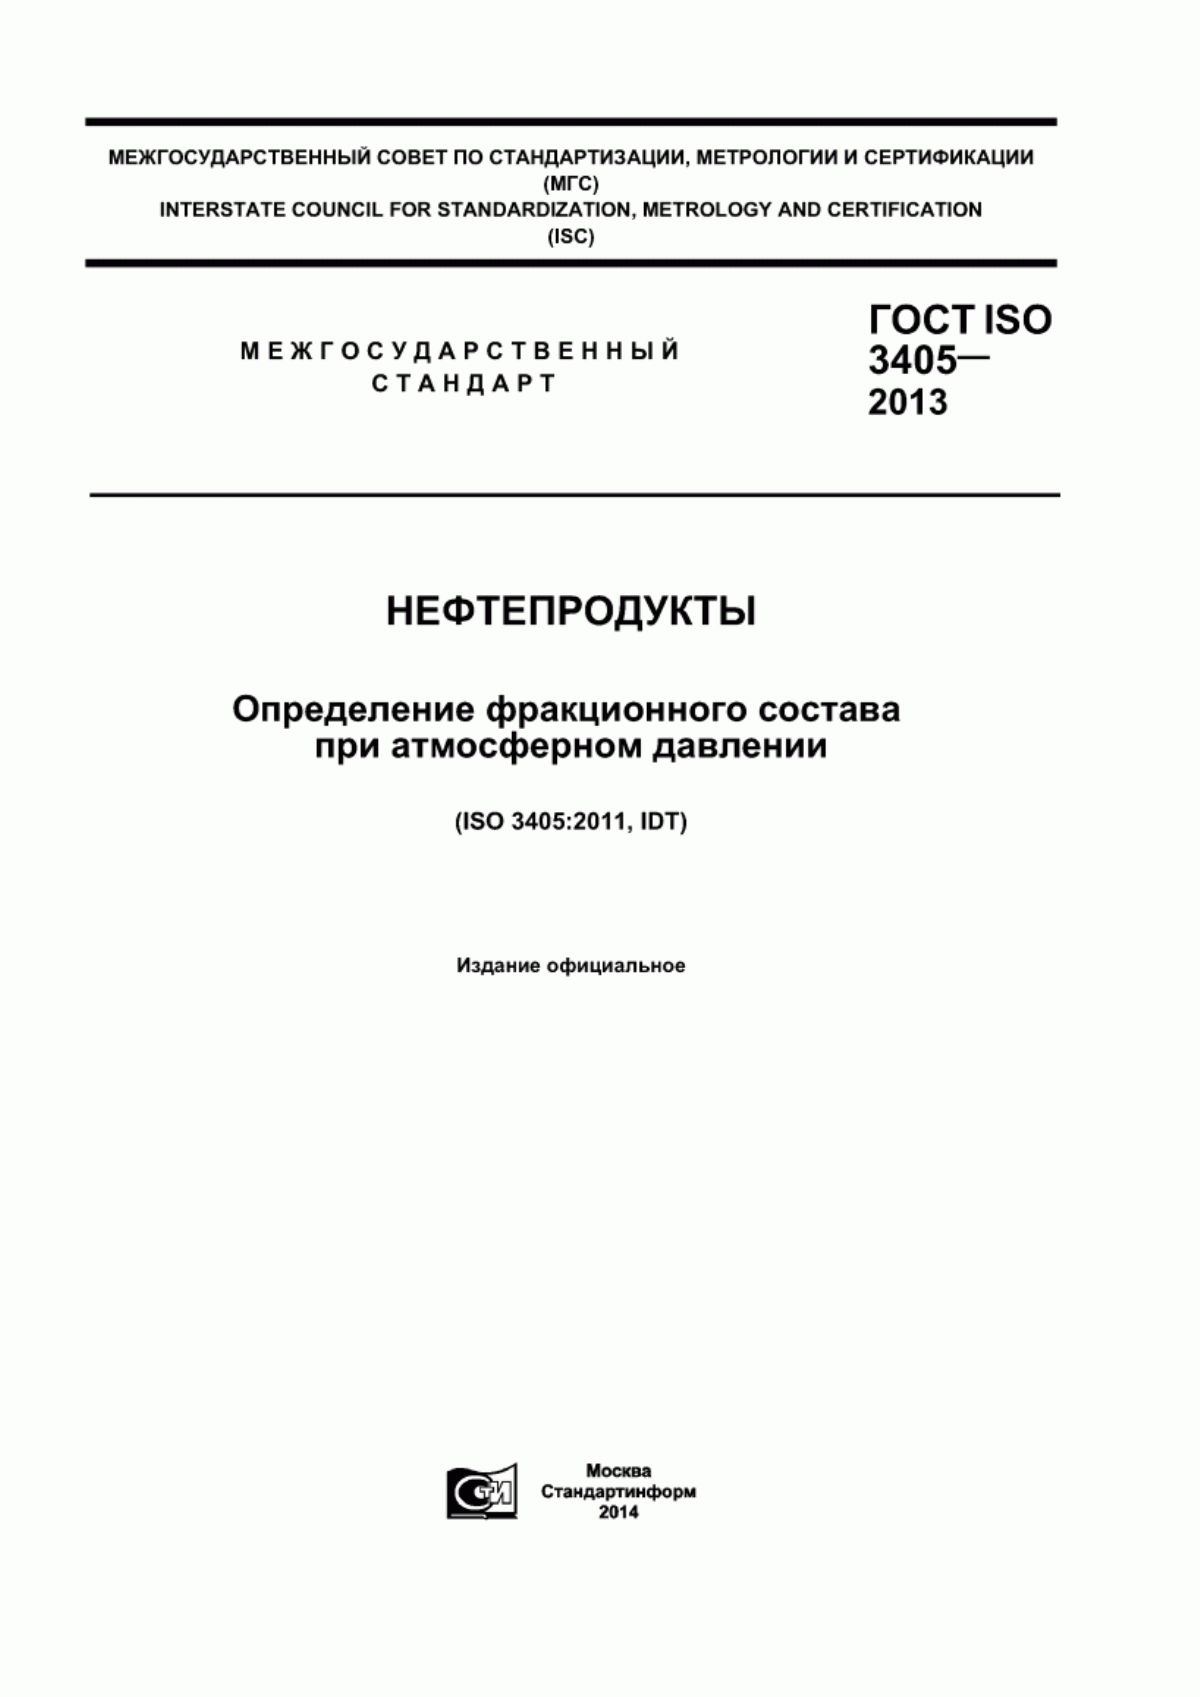 ГОСТ ISO 3405-2013 Нефтепродукты. Определения фракционного состава при атмосферном давлении